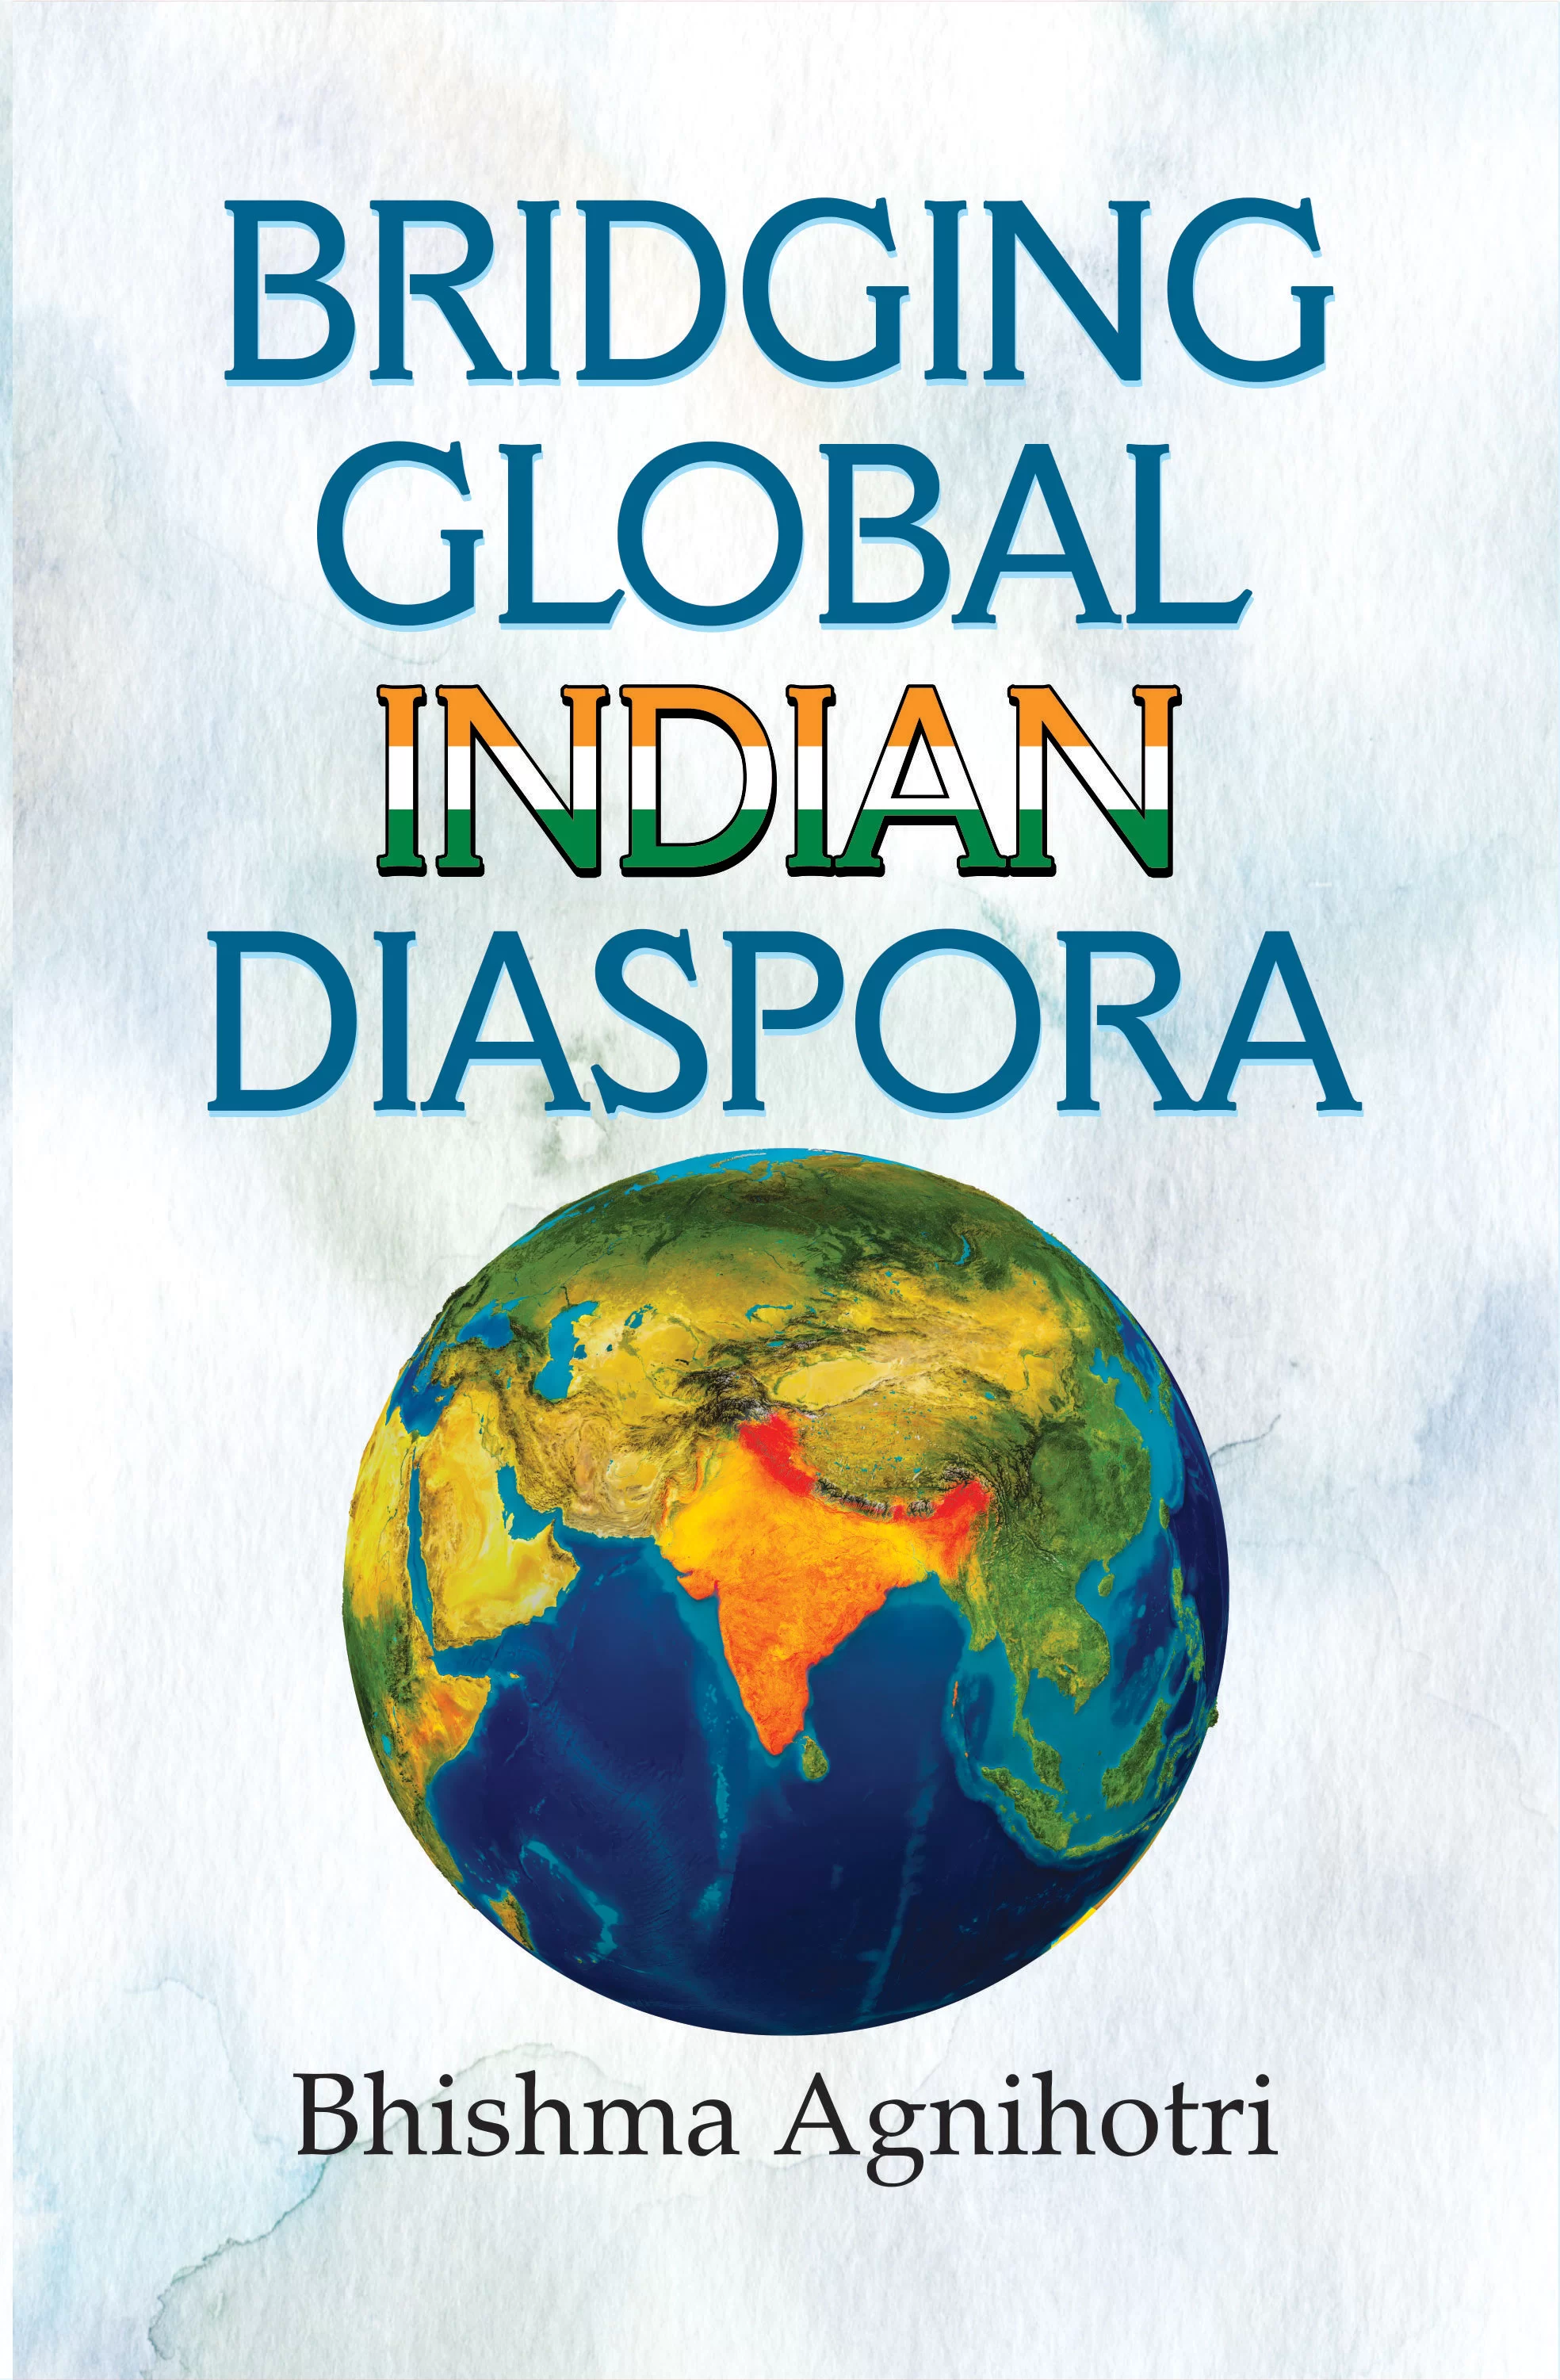 Bridging　Diaspora　Book　in　Bridging　Prices　Global　Low　and　Indian　India　Buy　Ratings　Diaspora　Online　Indian　Global　at　Reviews